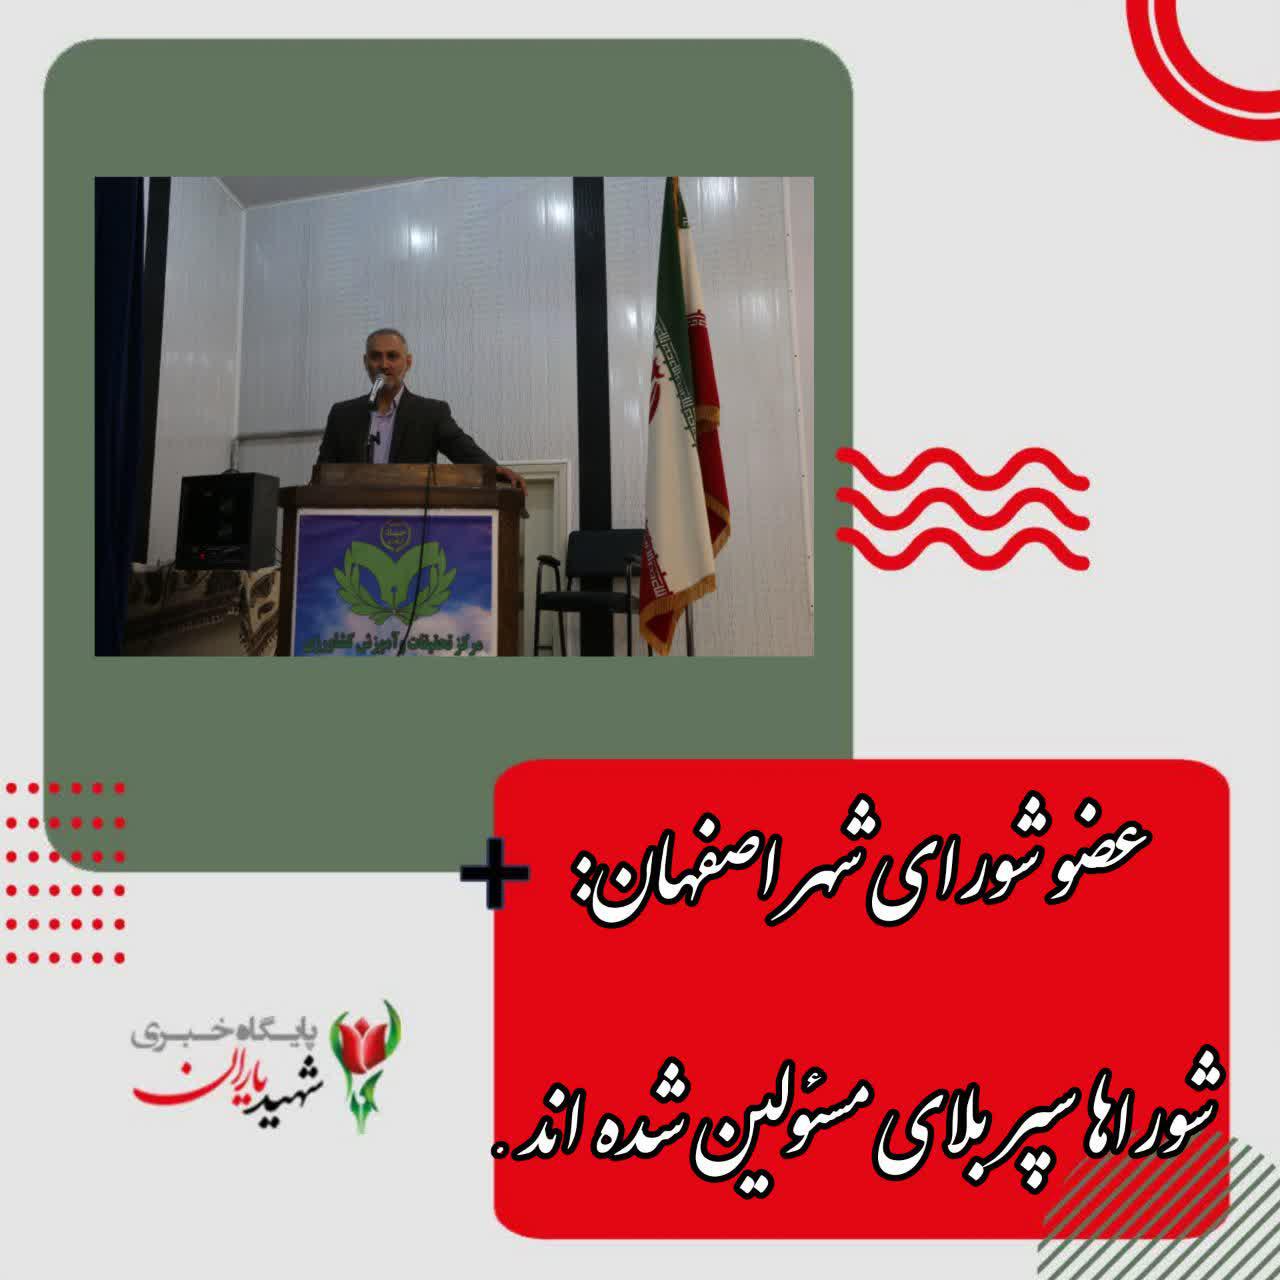 عضو شورای شهر اصفهان: شوراها سپر بلای مسئولین شده اند.